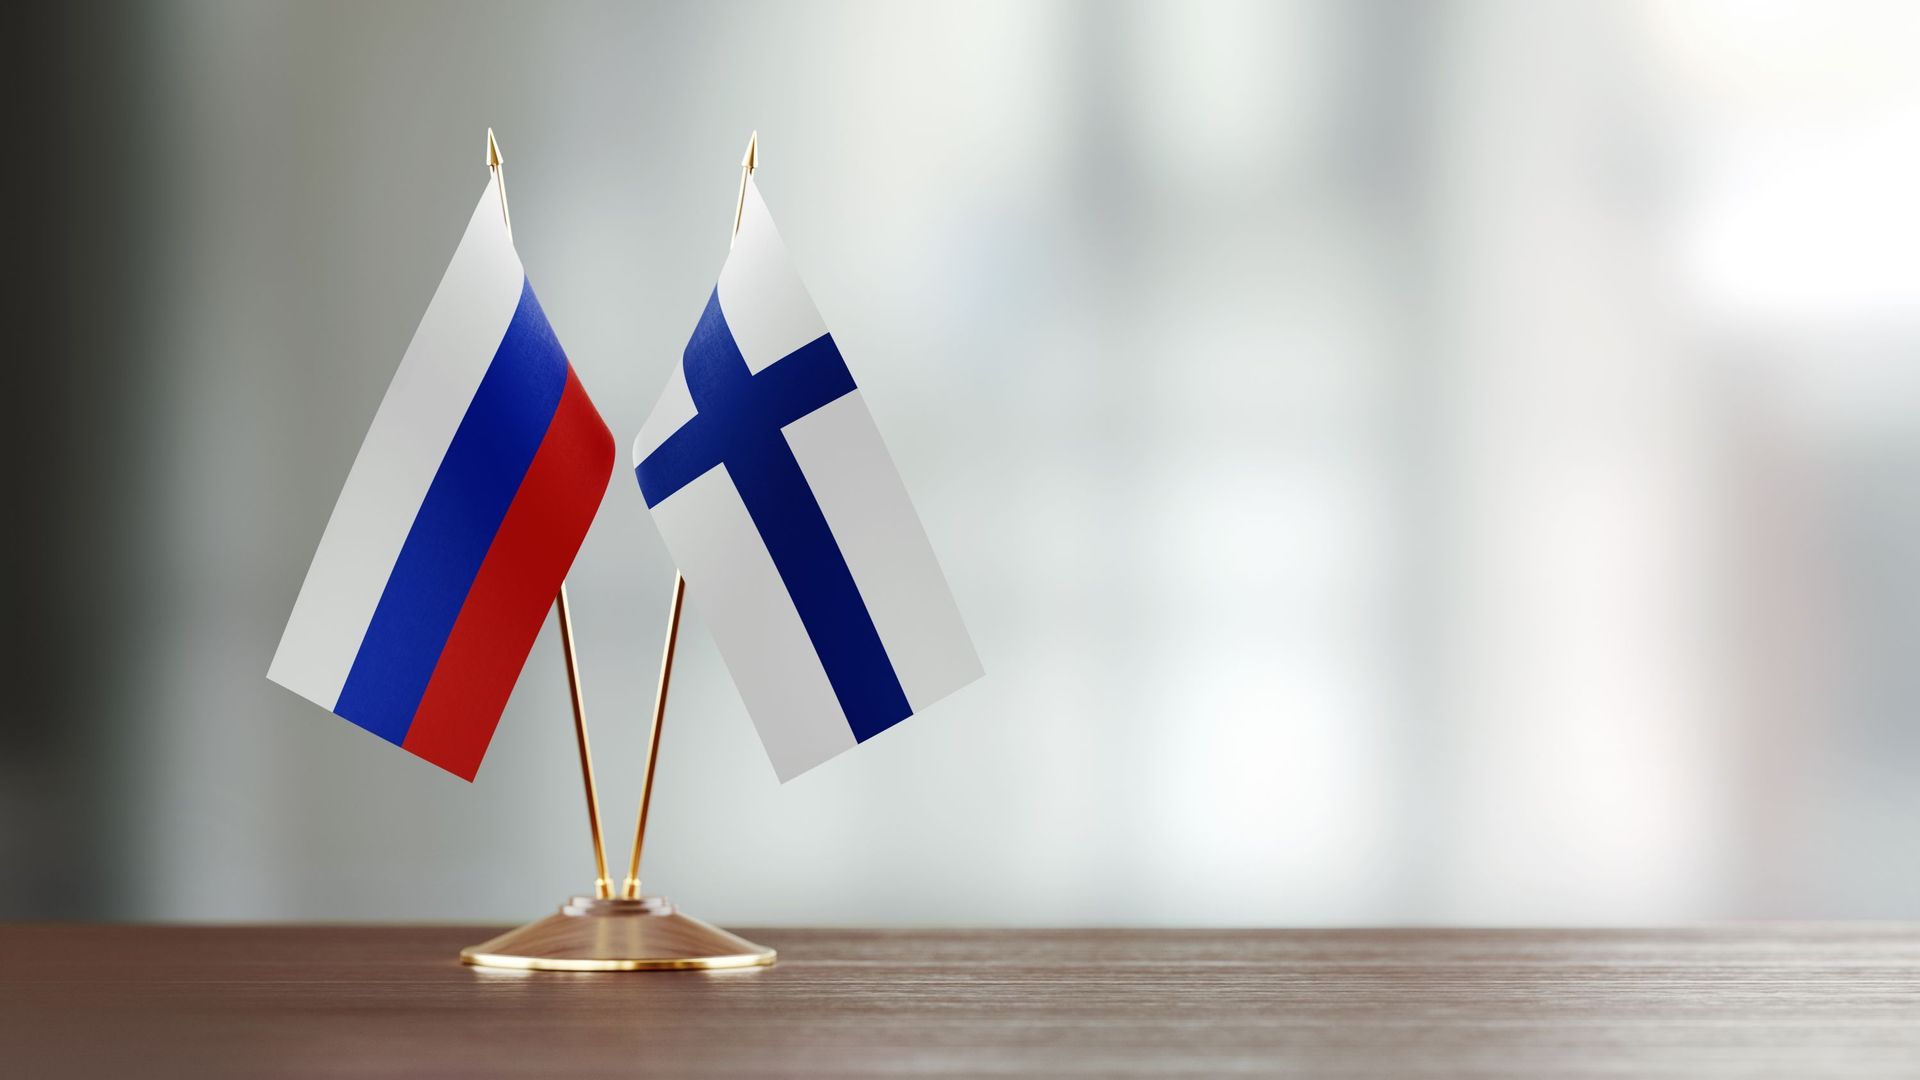 Les drapeaux de la Russie et de la Finlande.